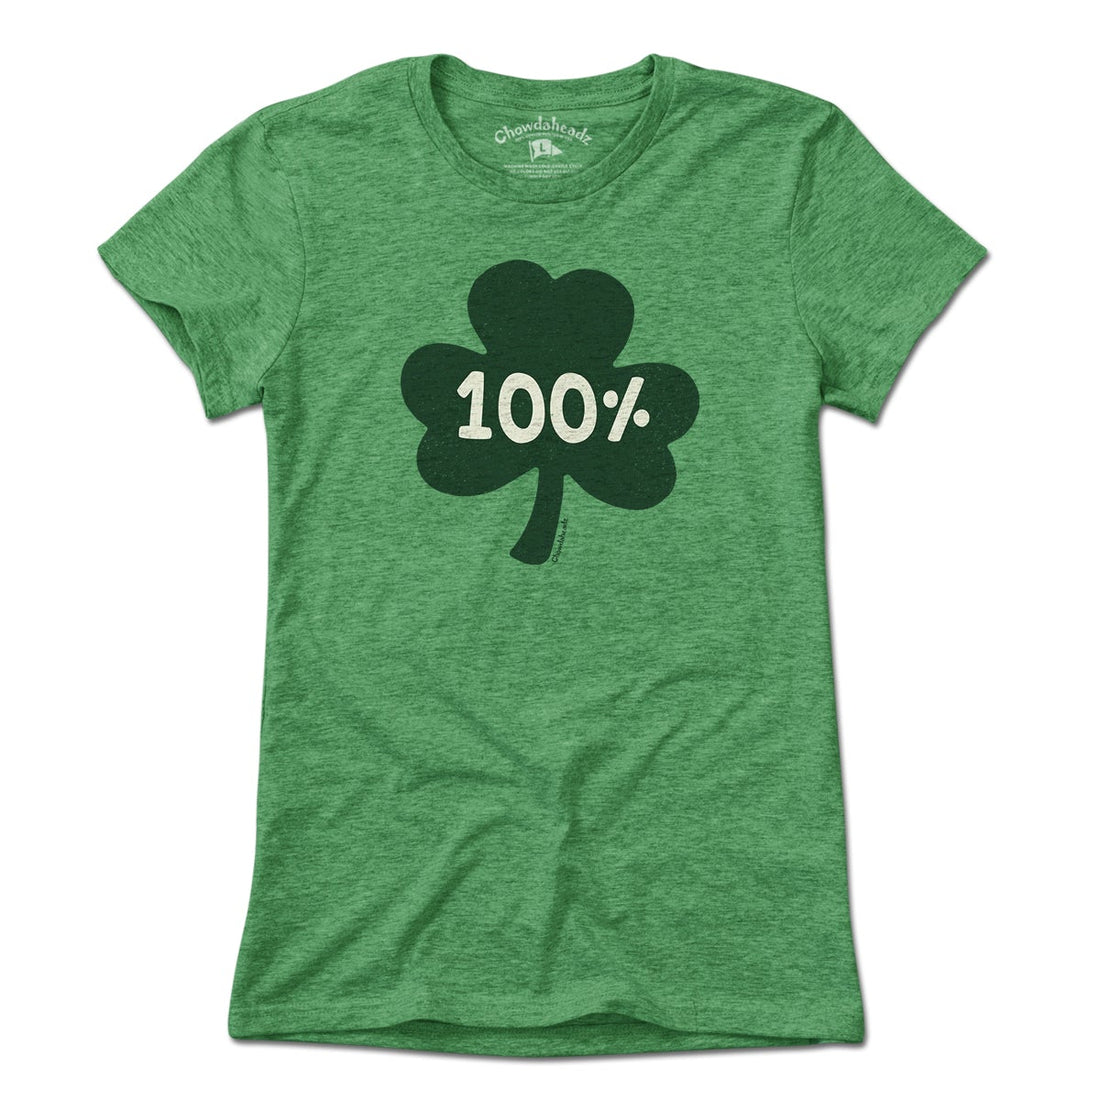 100% Irish T-Shirt - Chowdaheadz